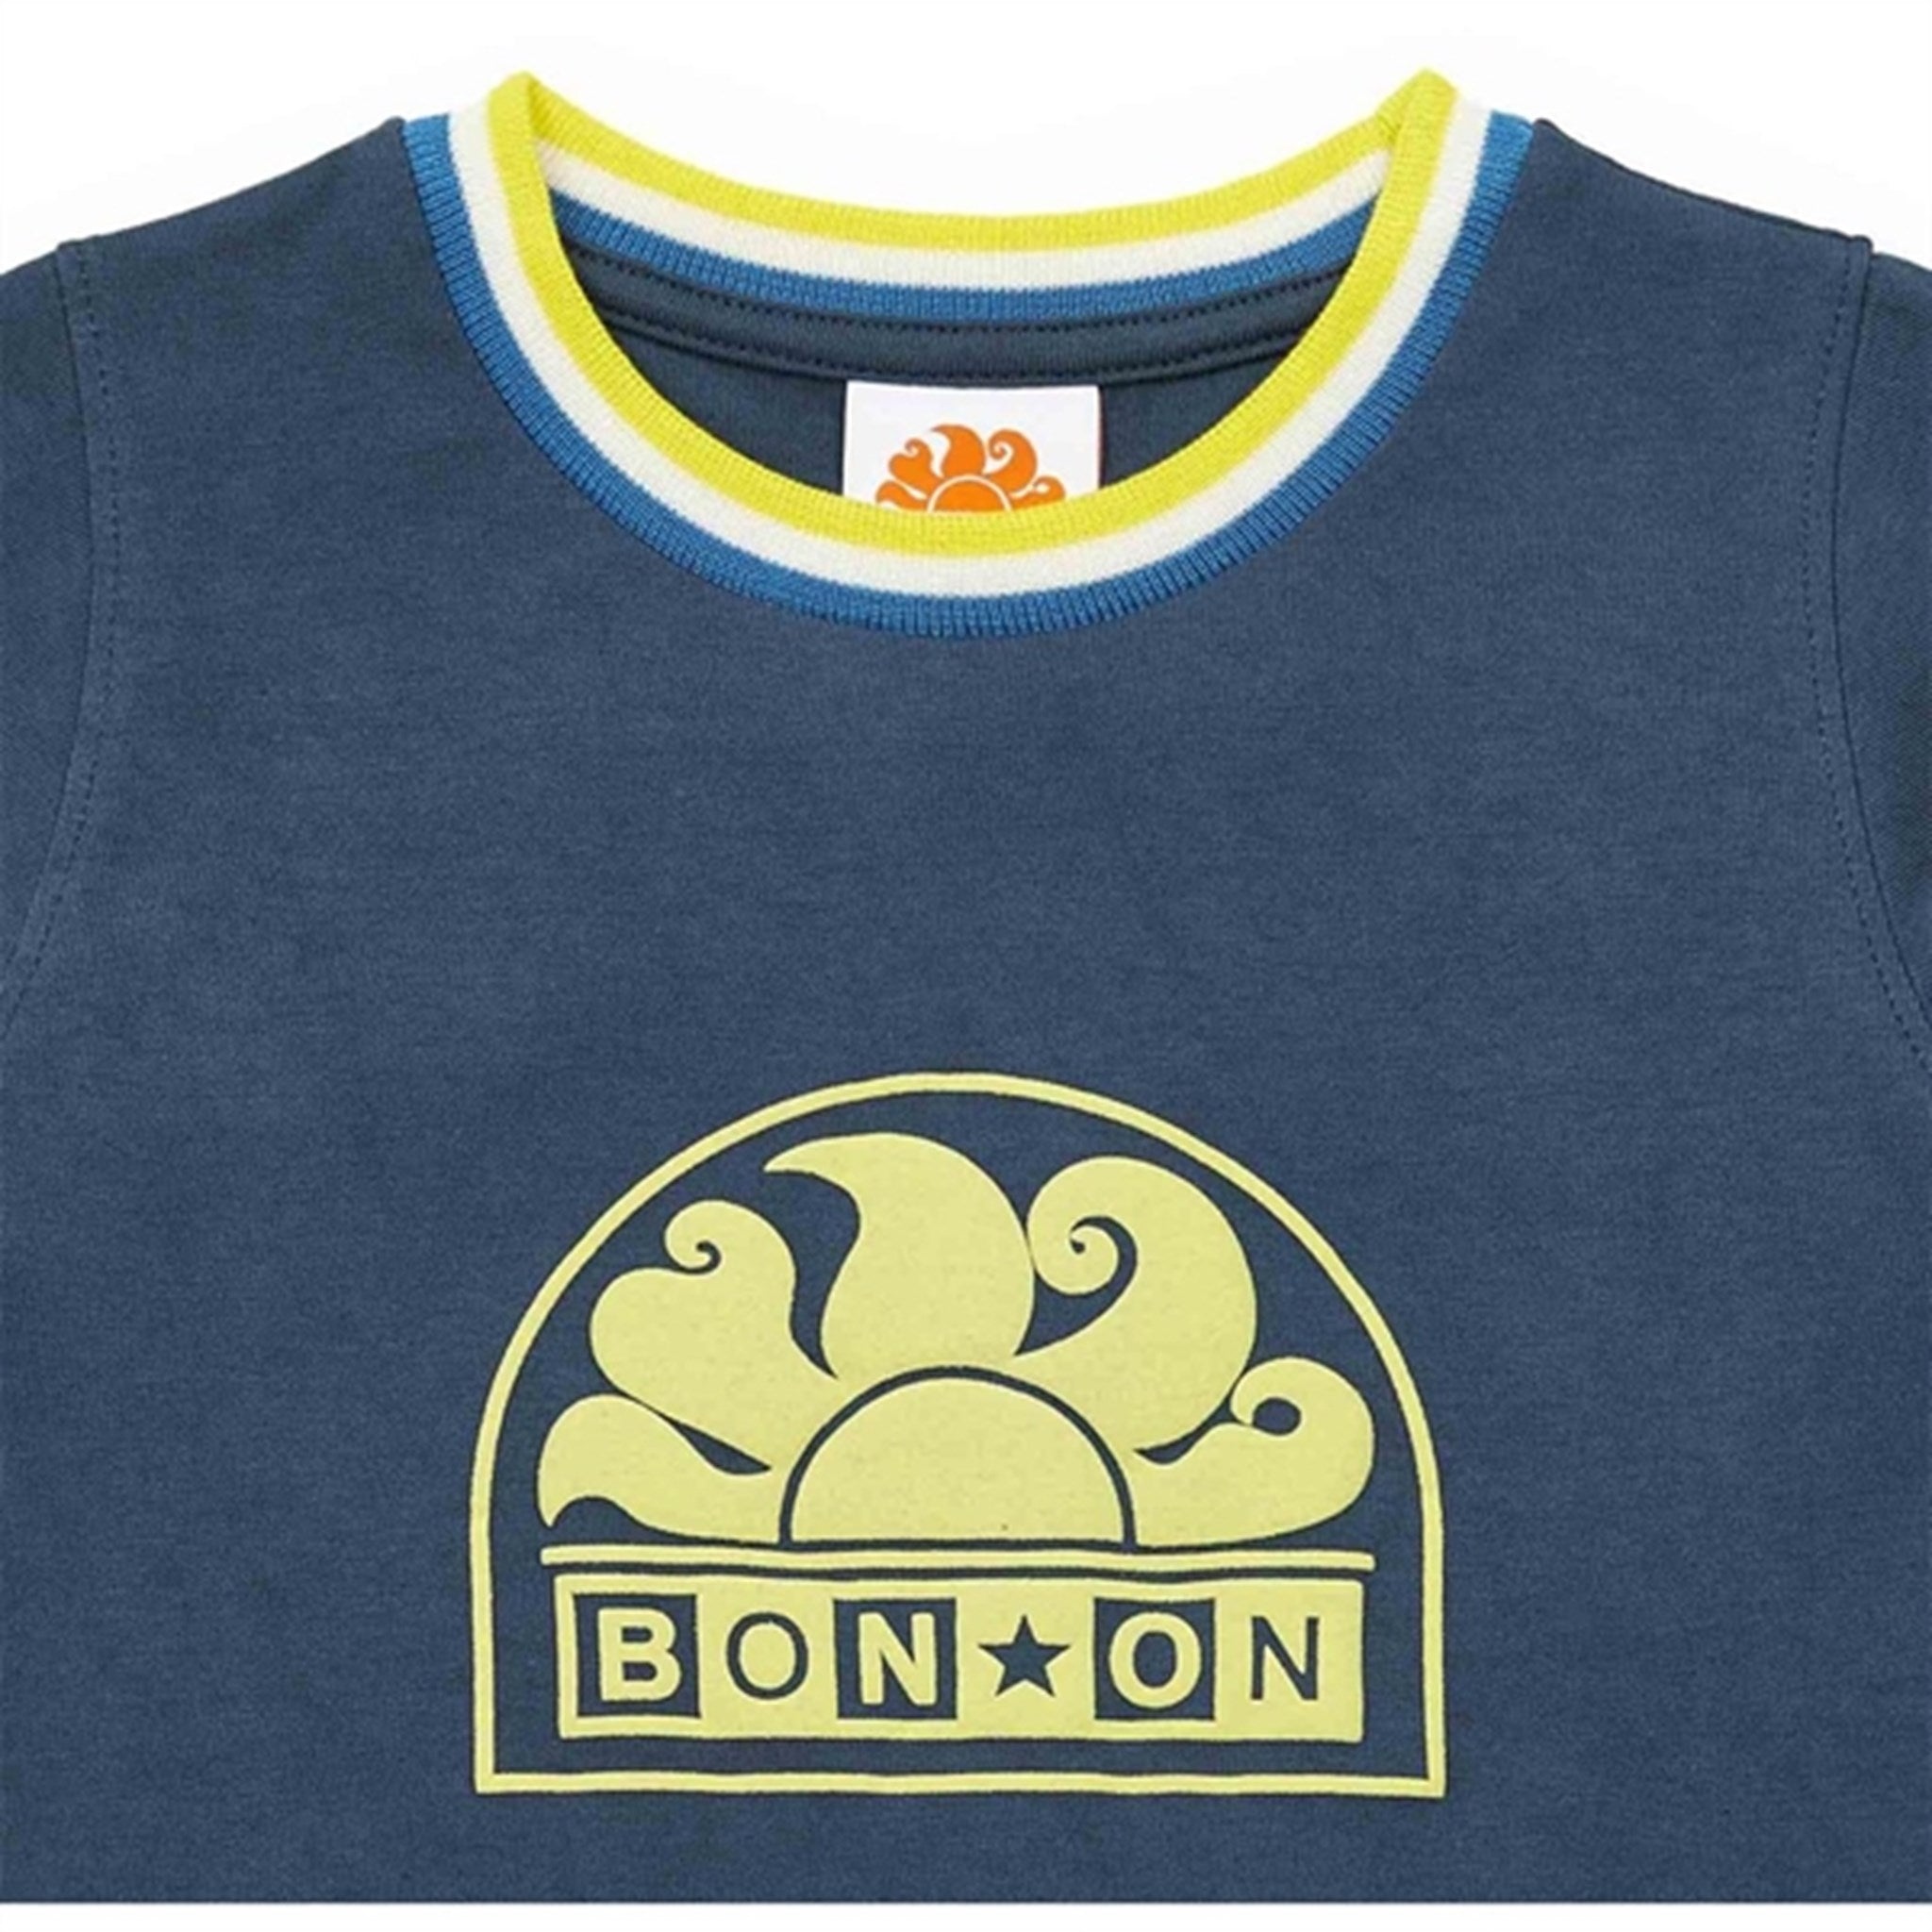 BONTON Navy Bonton T-Shirt 2